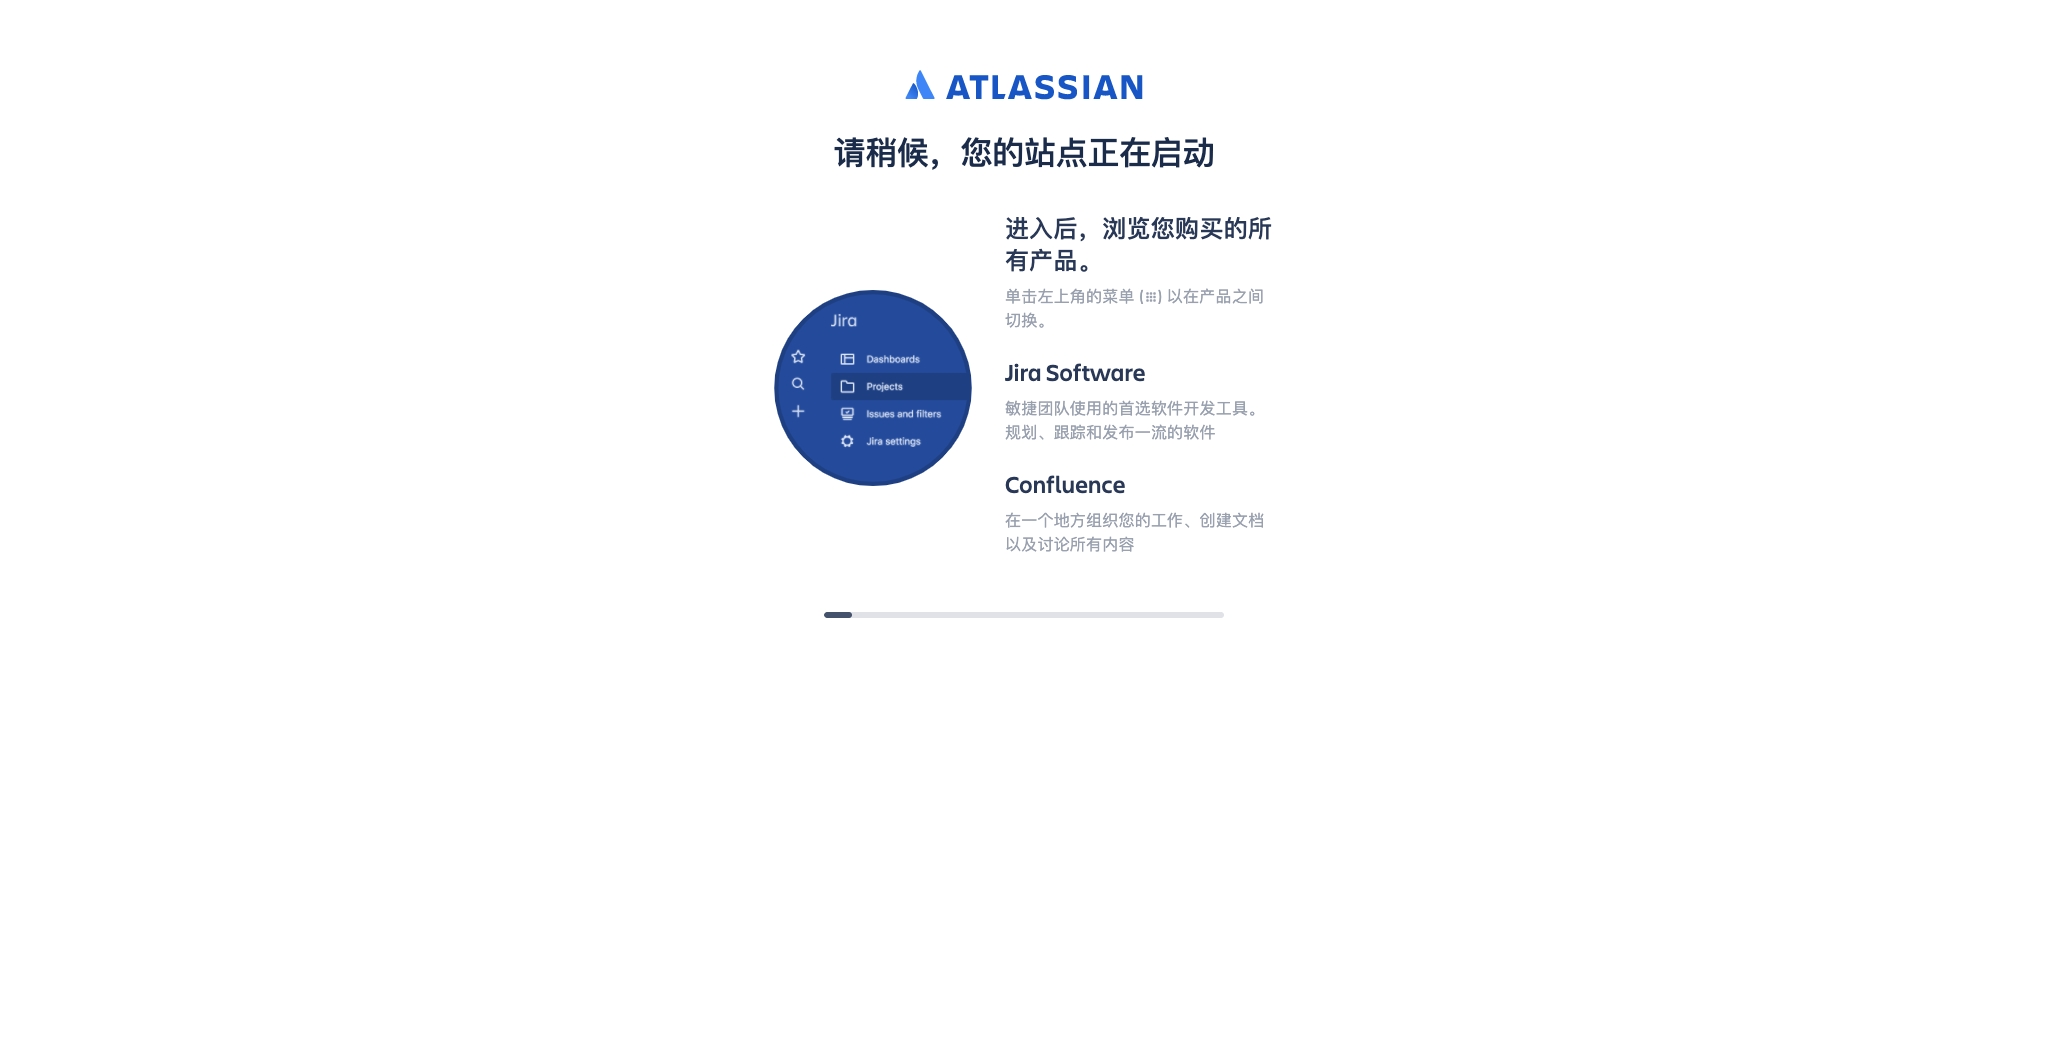 Confirmation  Atlassian.jpg